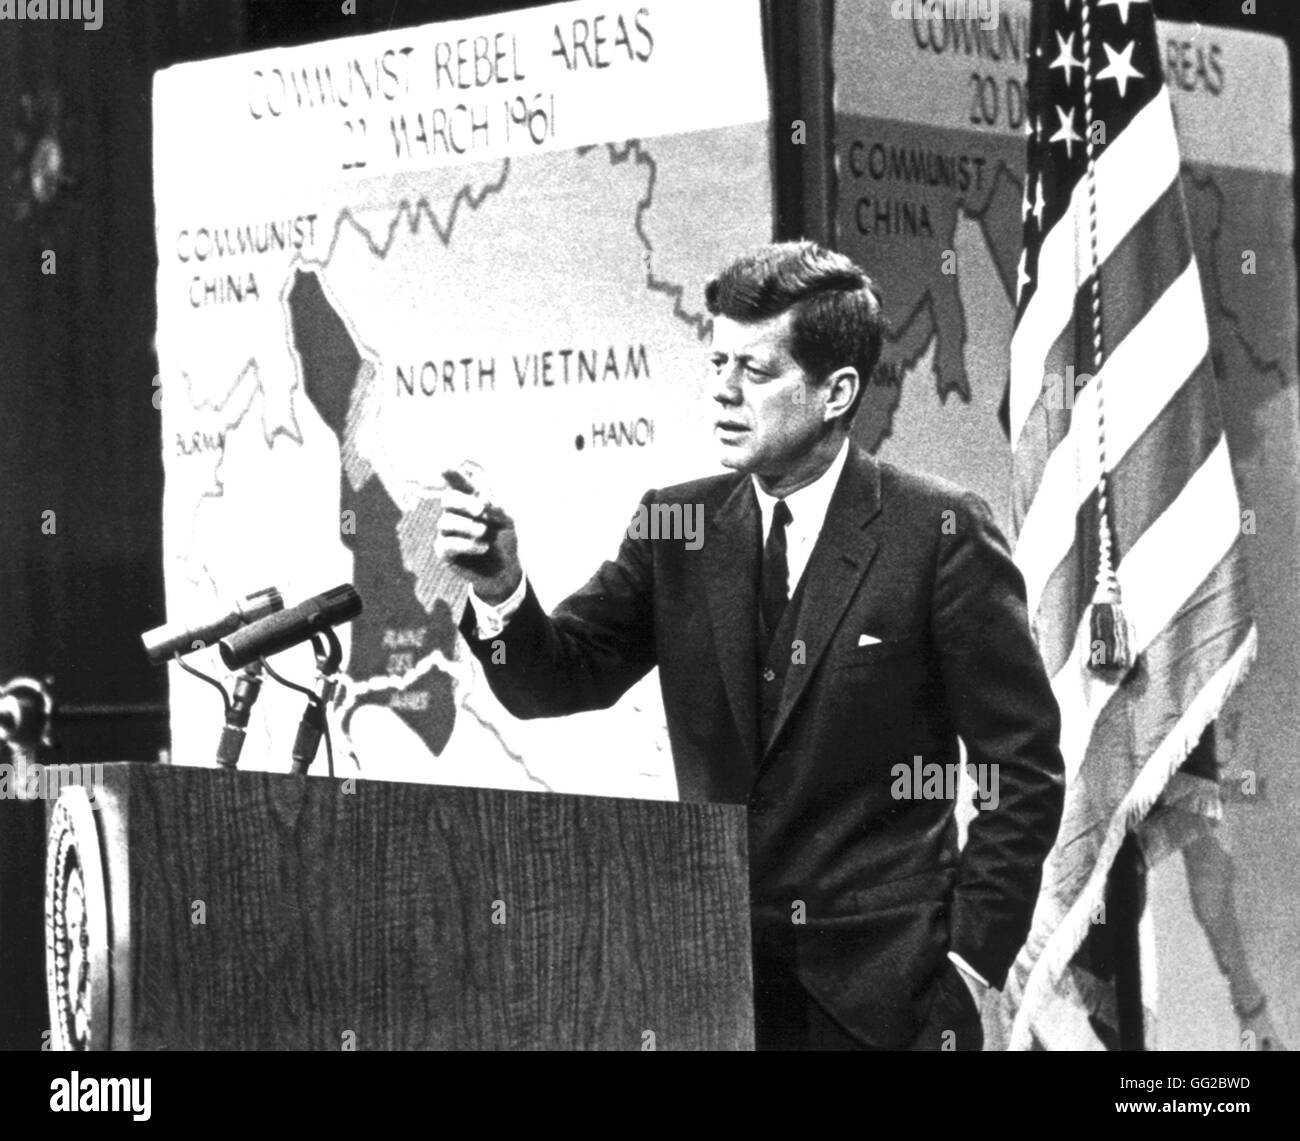 Radio und Fernsehen ausgestrahlt, während die John Kennedy Restaurantassoziation kommunistischen Eindringen in Laos. 20. Jahrhunderts Archive Vereinigte Staaten nationale. Washington Stockfoto